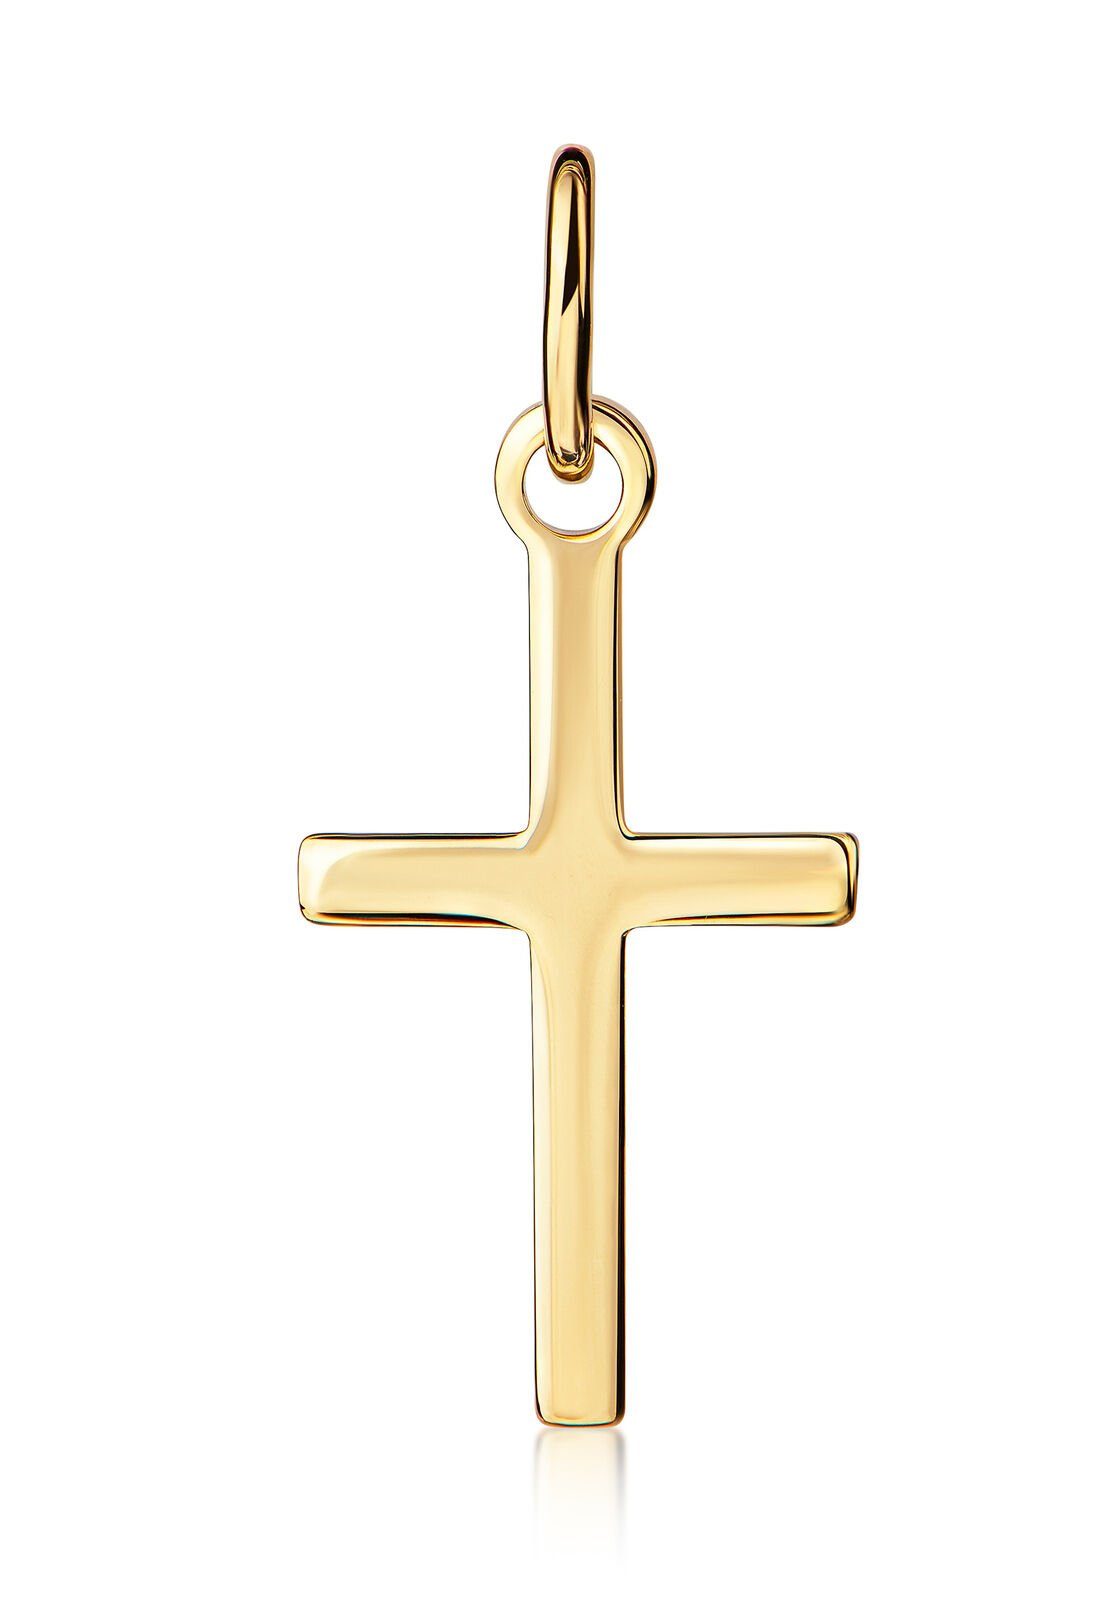 JEVELION Kreuzanhänger Taufkreuz Kreuz-Anhänger aus 585 Gold 14 Karat / 14k  (Goldkreuz, für Kinder), Taufkreuz - Made in Germany